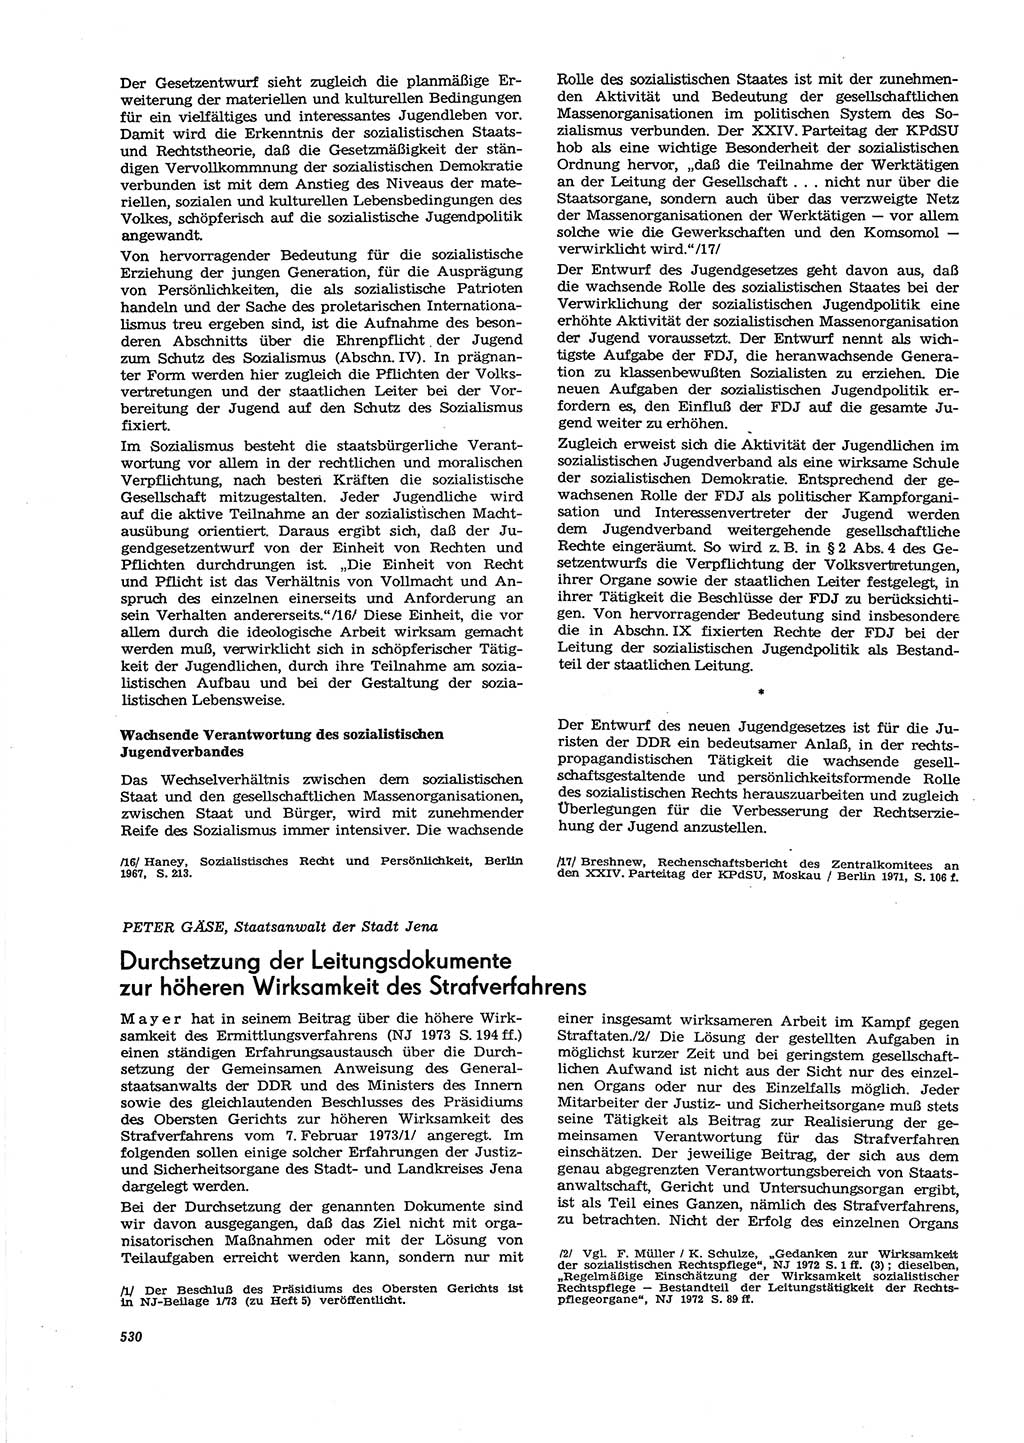 Neue Justiz (NJ), Zeitschrift für Recht und Rechtswissenschaft [Deutsche Demokratische Republik (DDR)], 27. Jahrgang 1973, Seite 530 (NJ DDR 1973, S. 530)